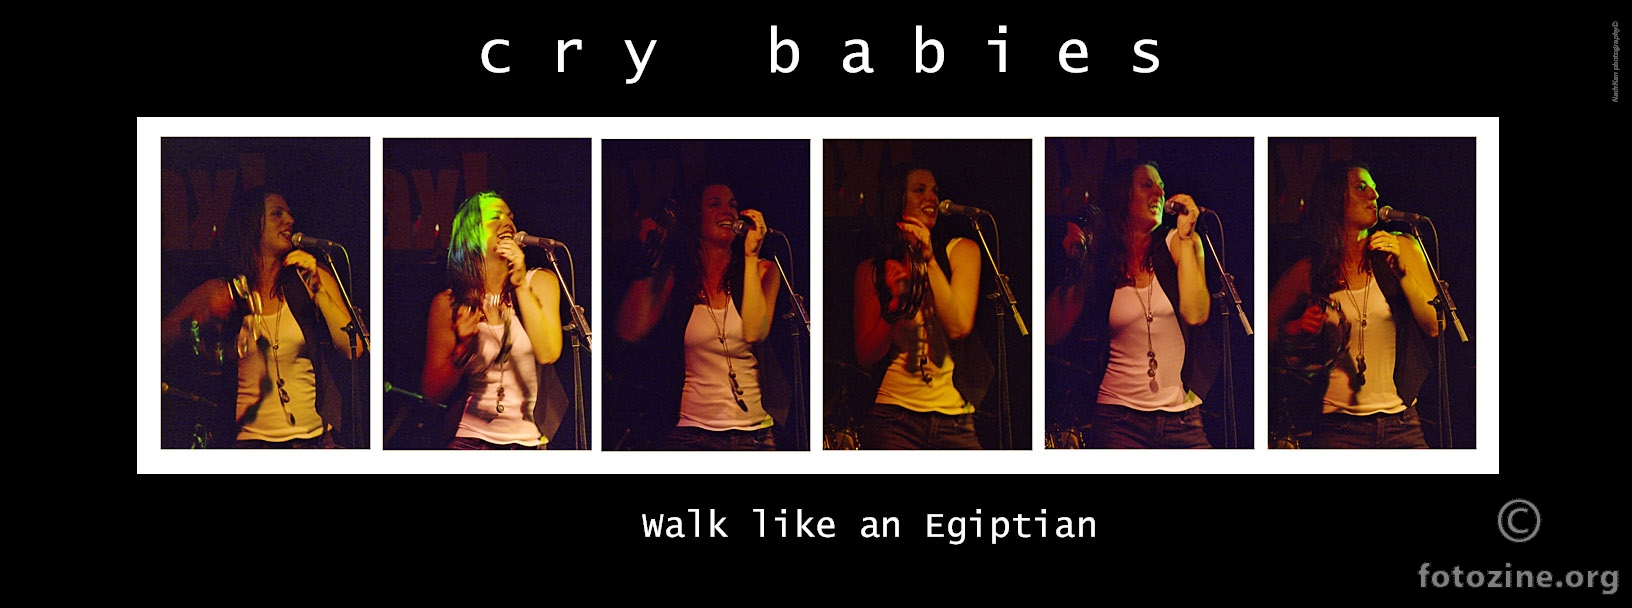 walk like an egiptian